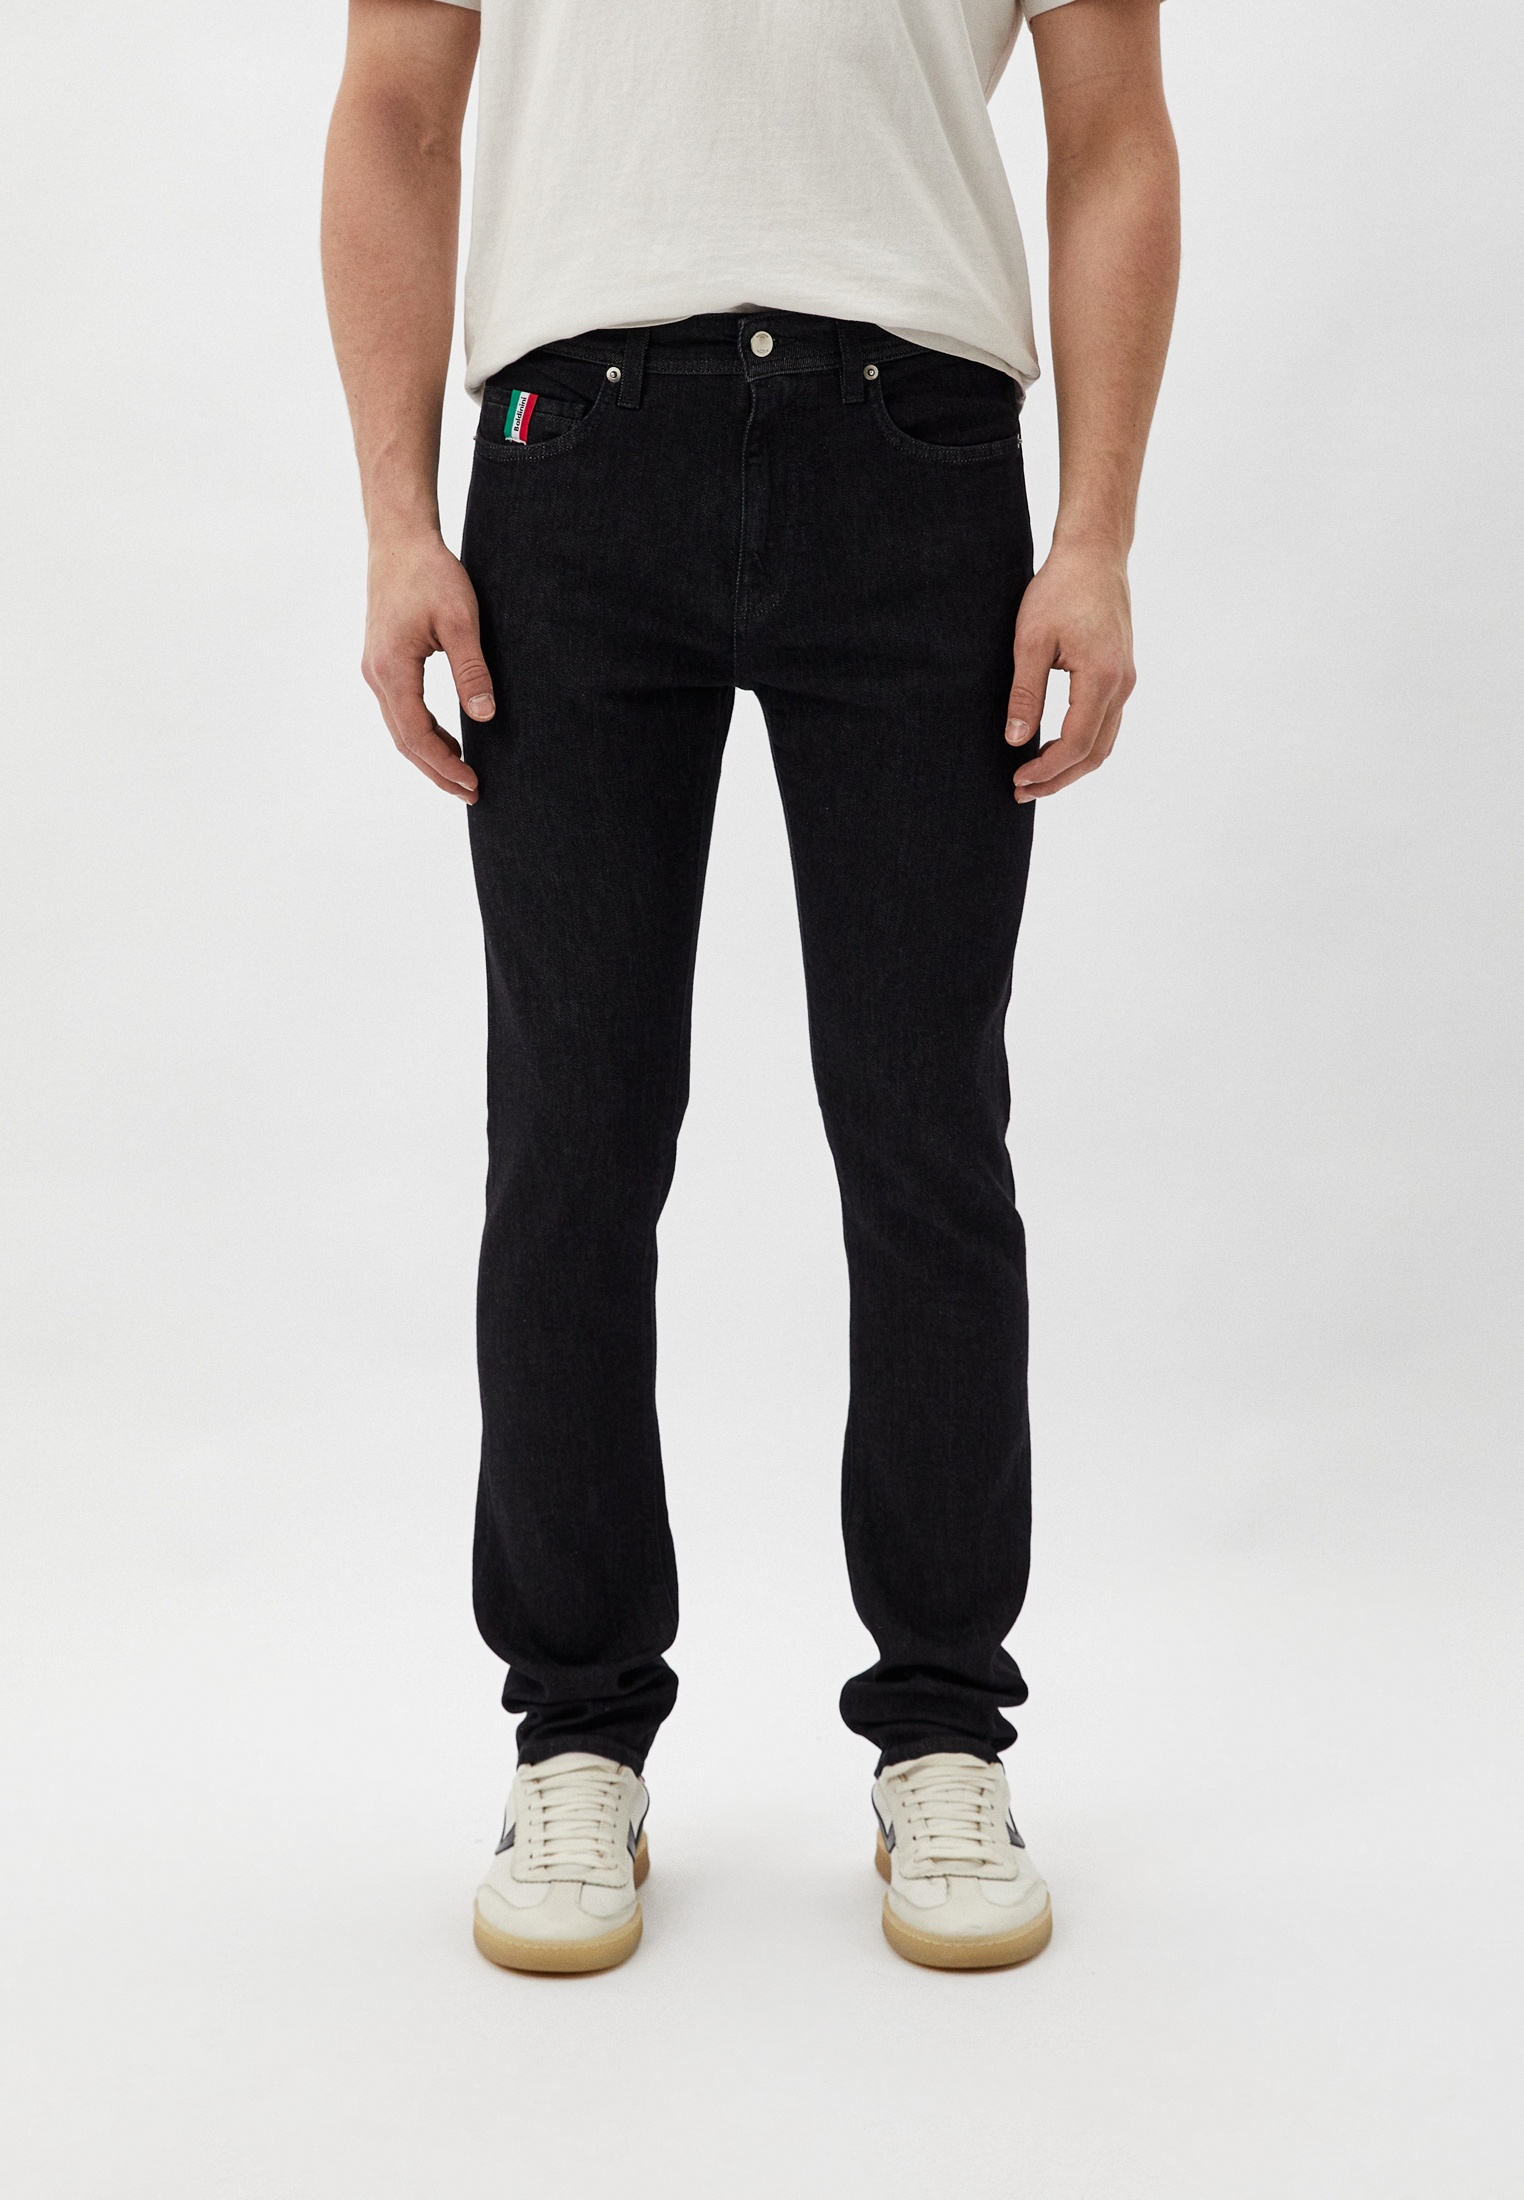 Мужские прямые джинсы Baldinini Trend (Балдинини Тренд) T5301CUNEO